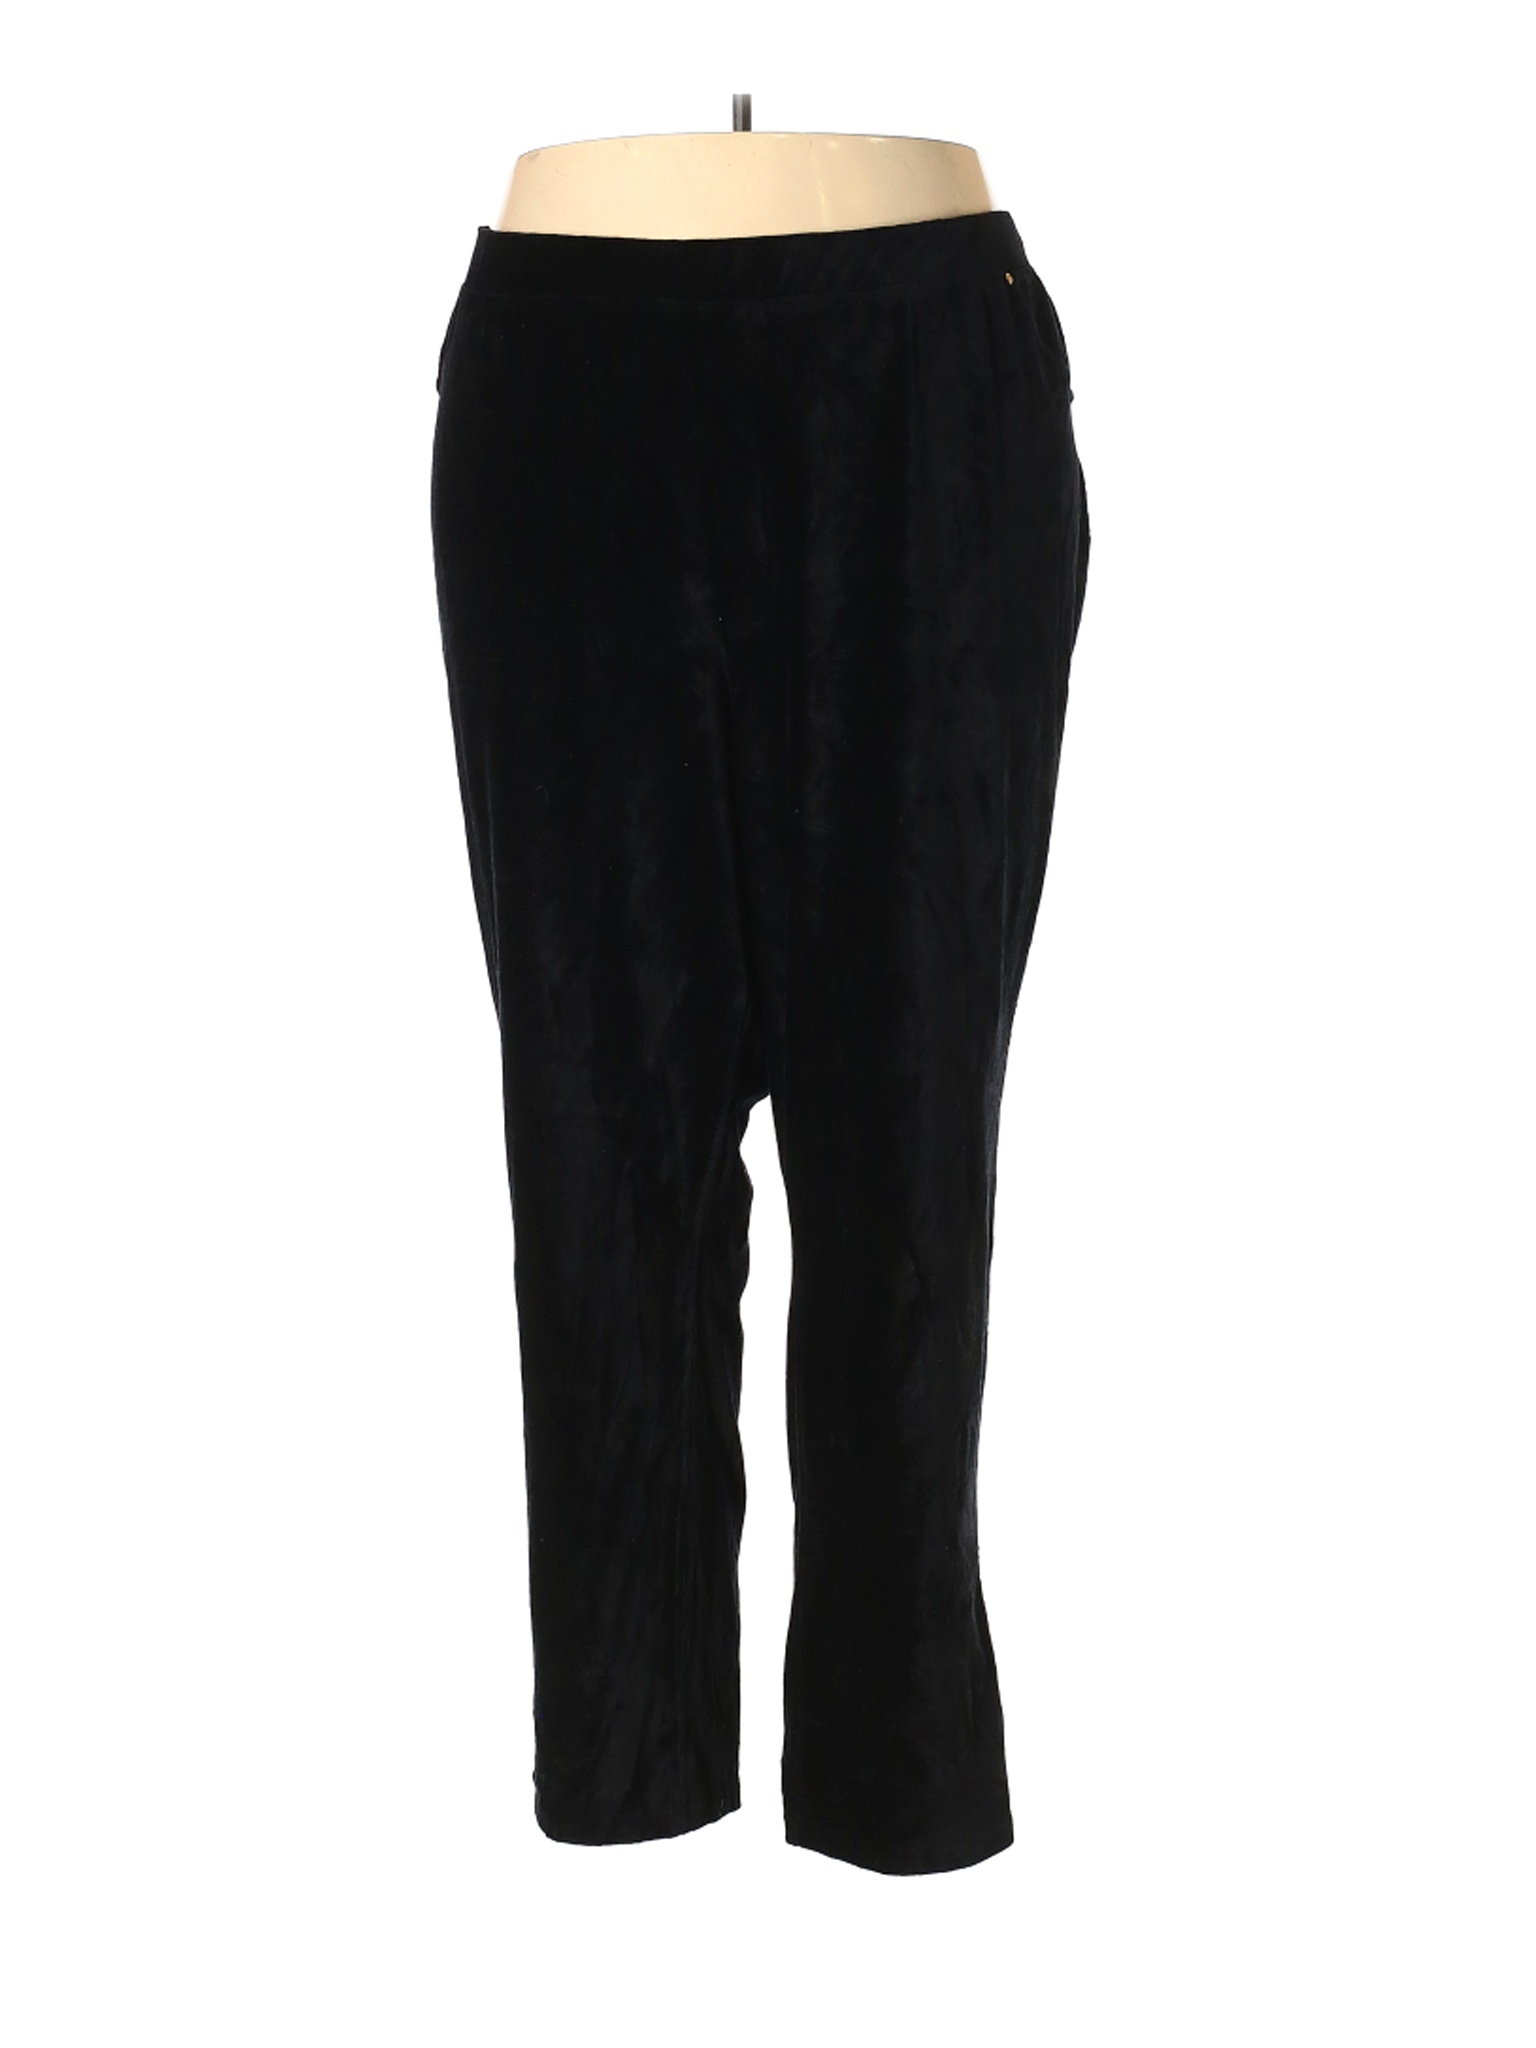 Catherines Women Black Velour Pants 5X Plus | eBay